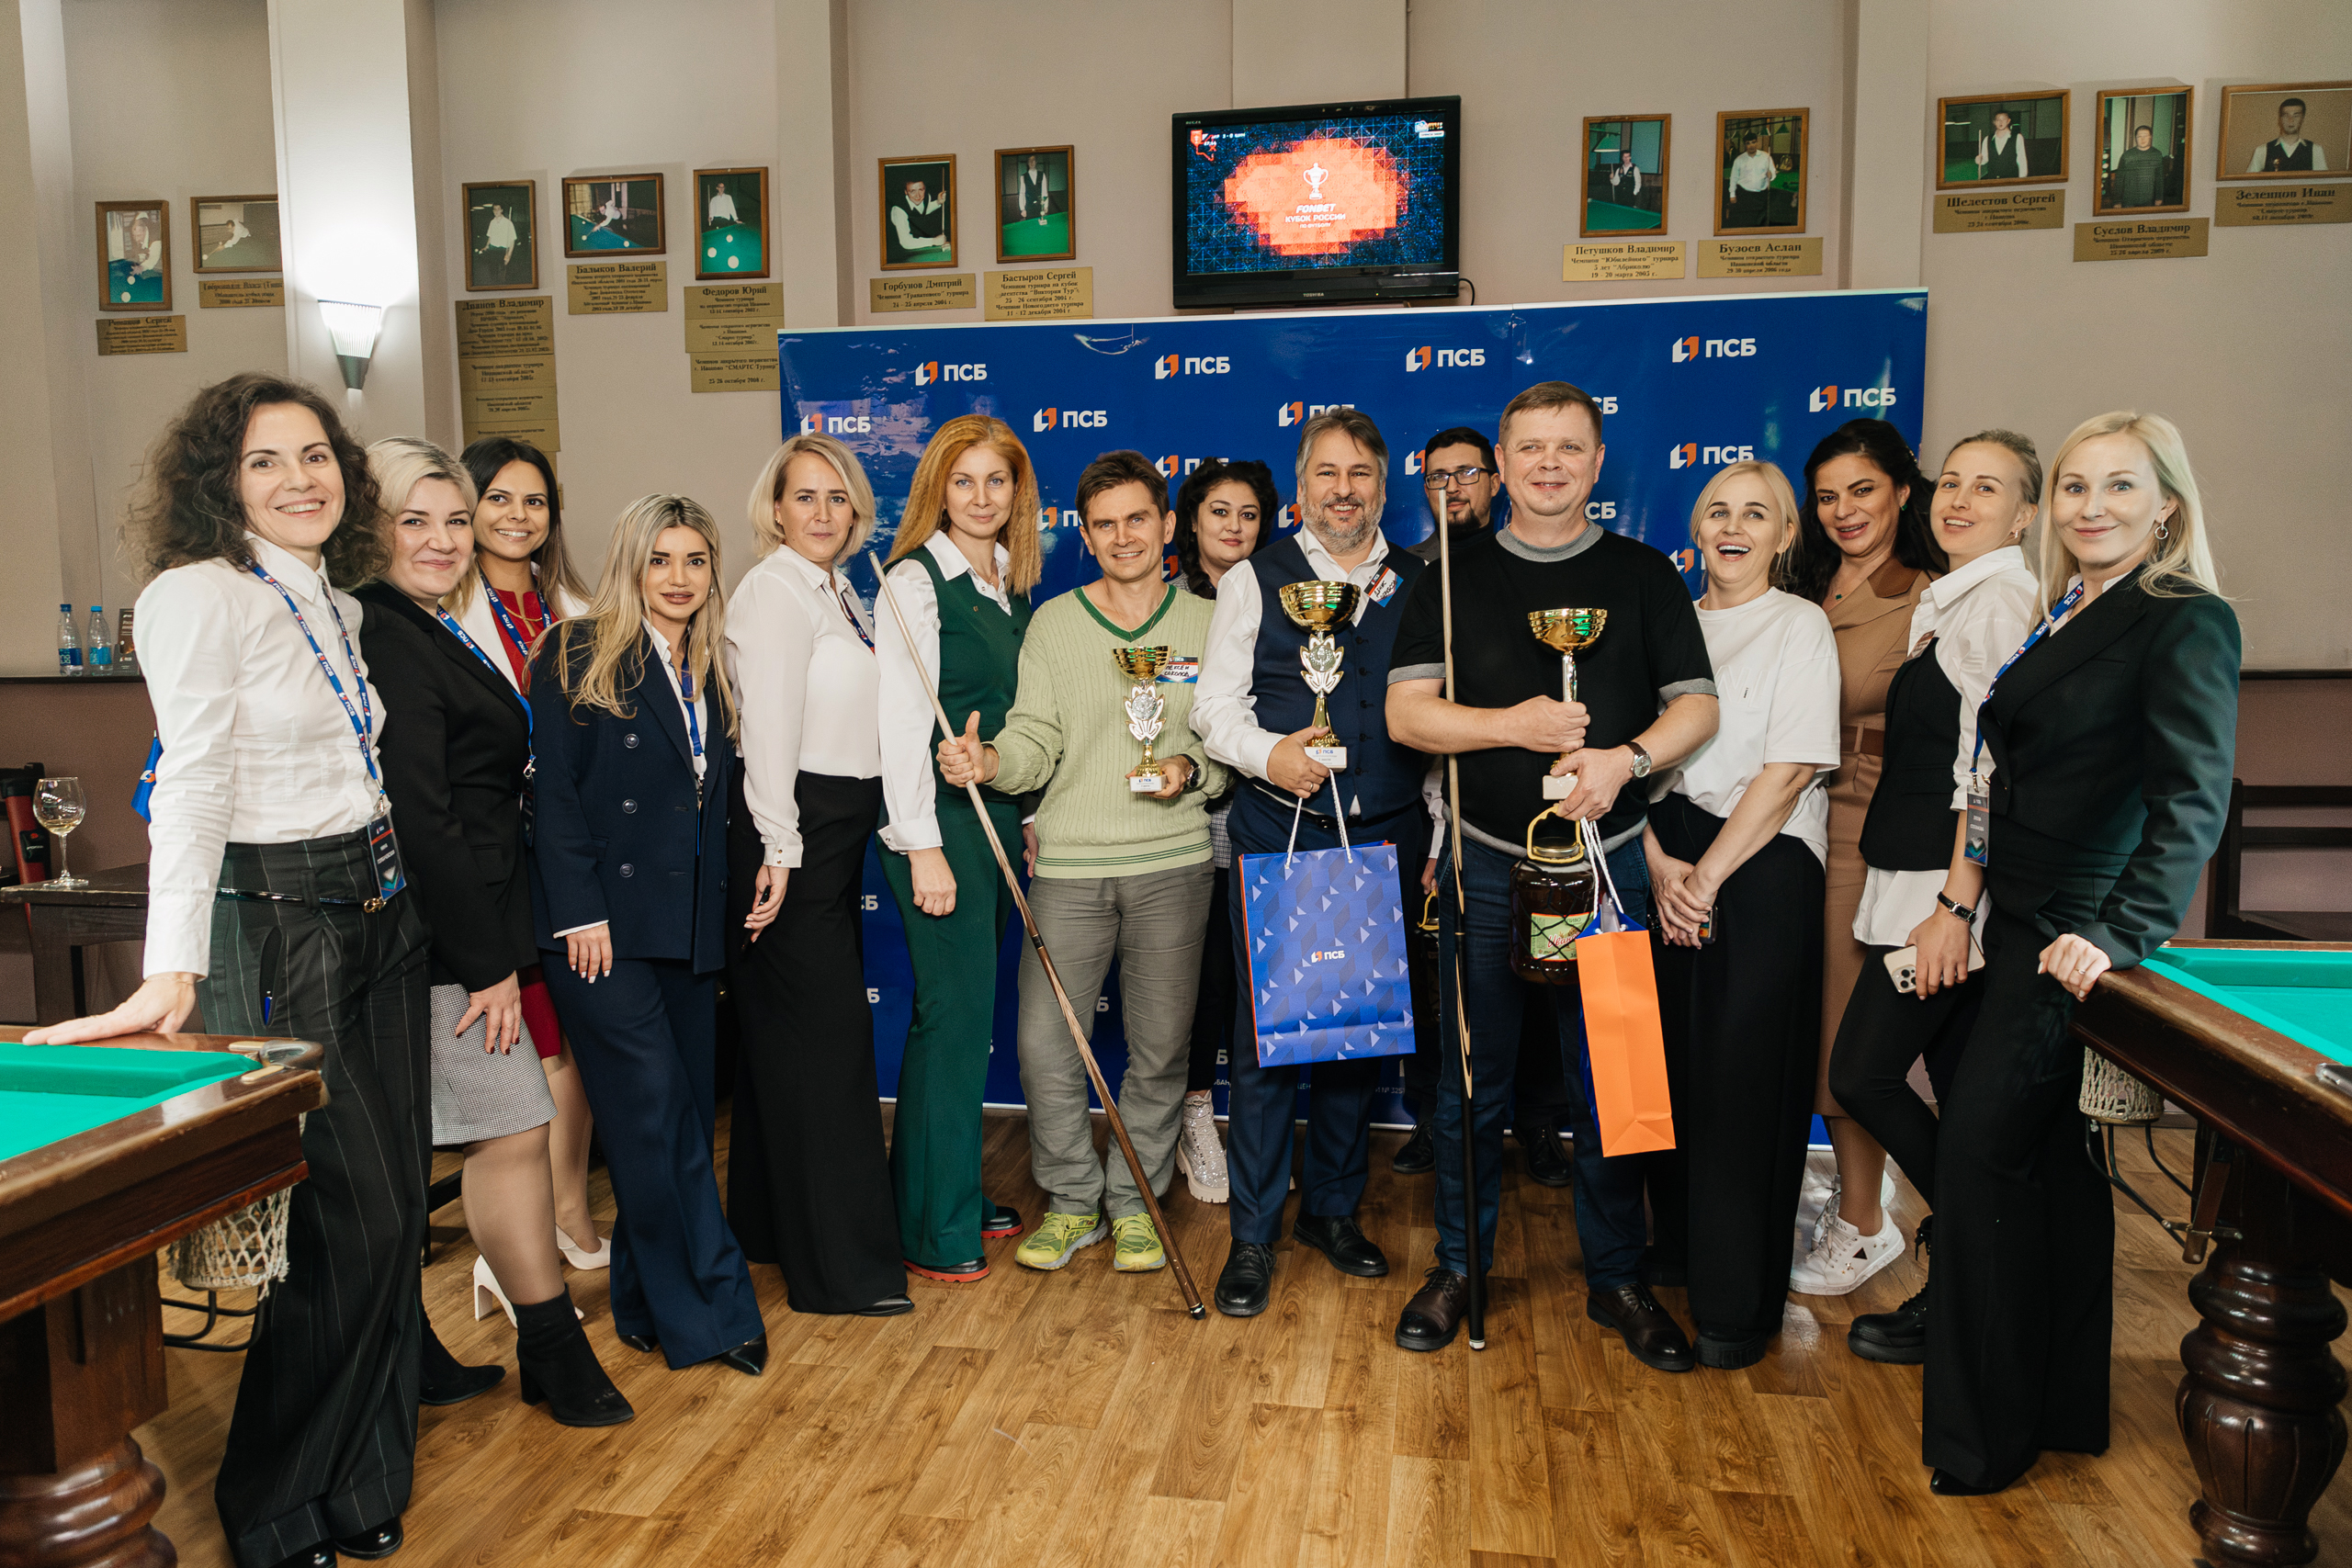 ПСБ провел турнир по русскому бильярду для ивановского бизнес-сообщества